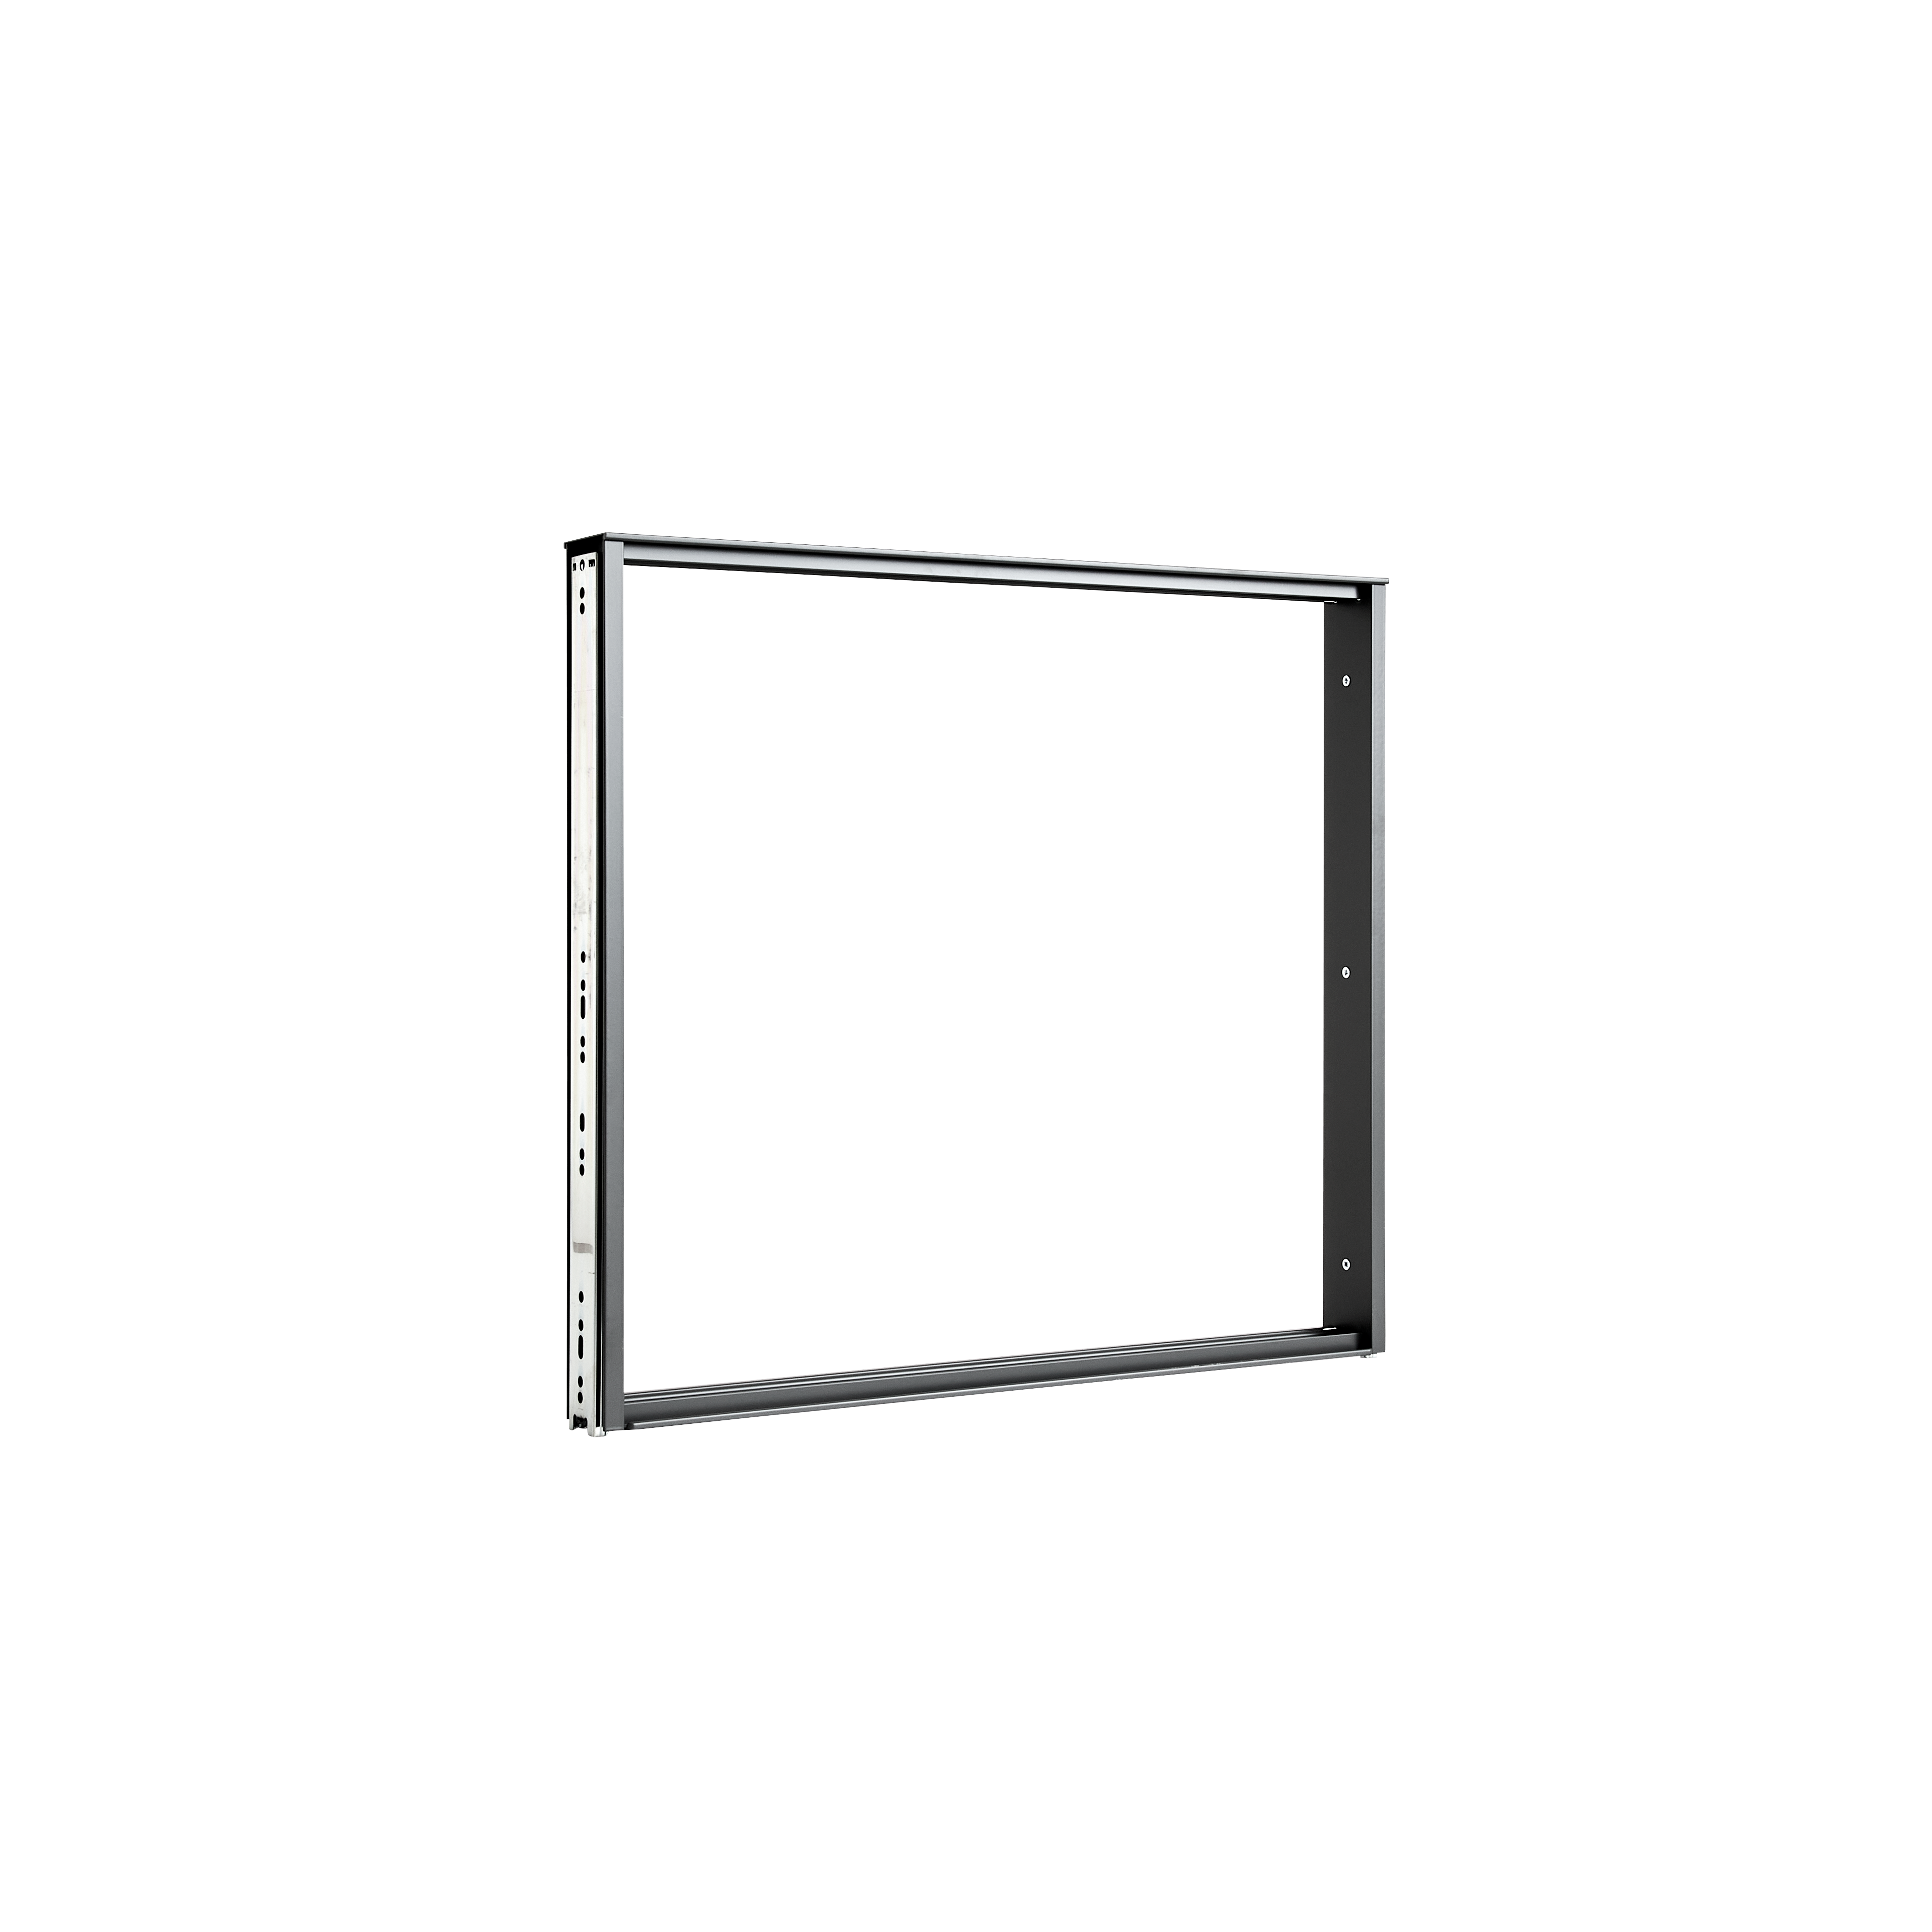 Uittrekbaar frame Organize 40 cm. Antraciet